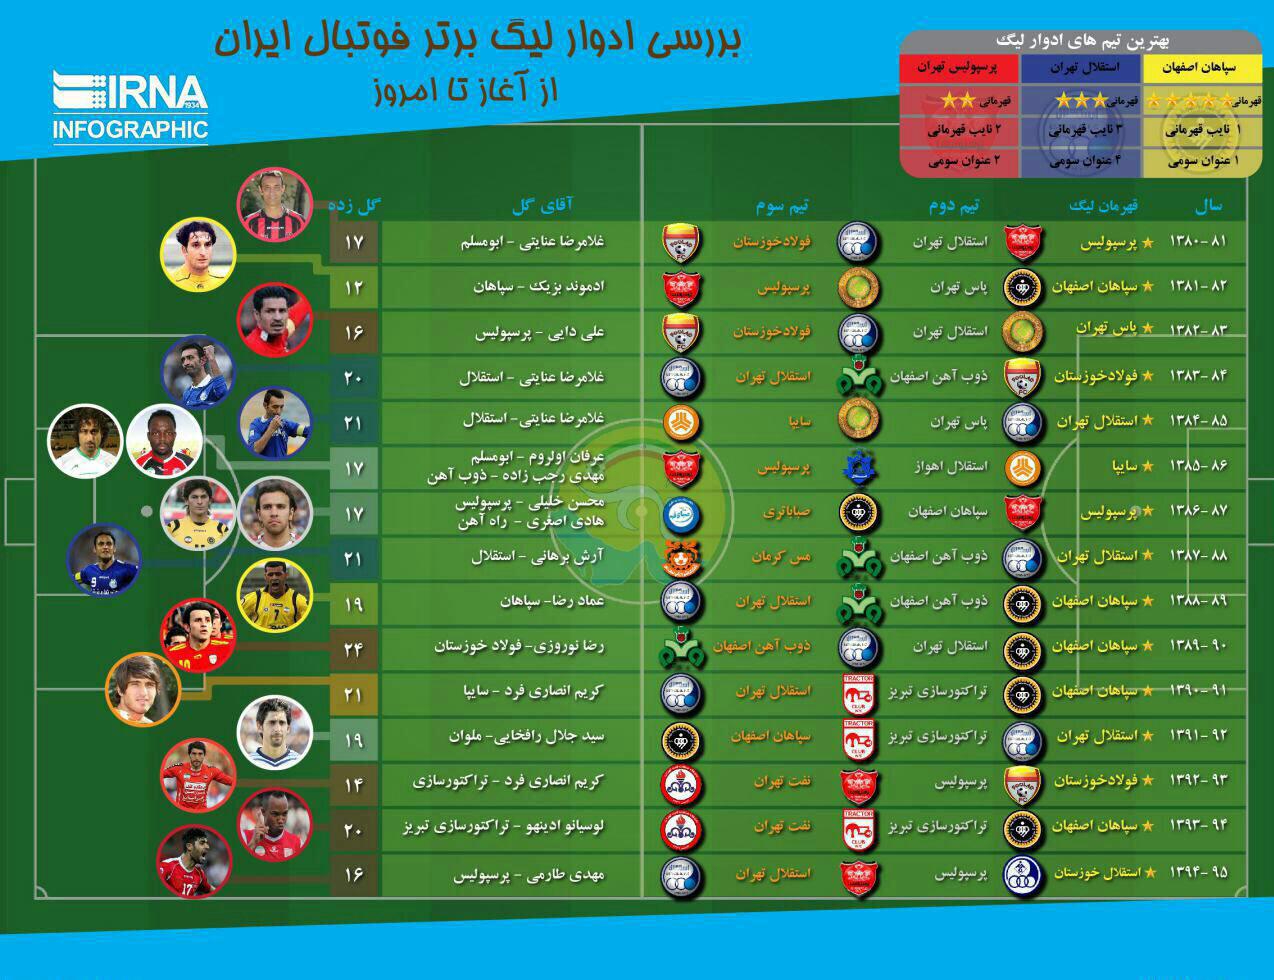 جام های پرسپولیس در فوتبال ایران بیشتر است یا استقلال؟